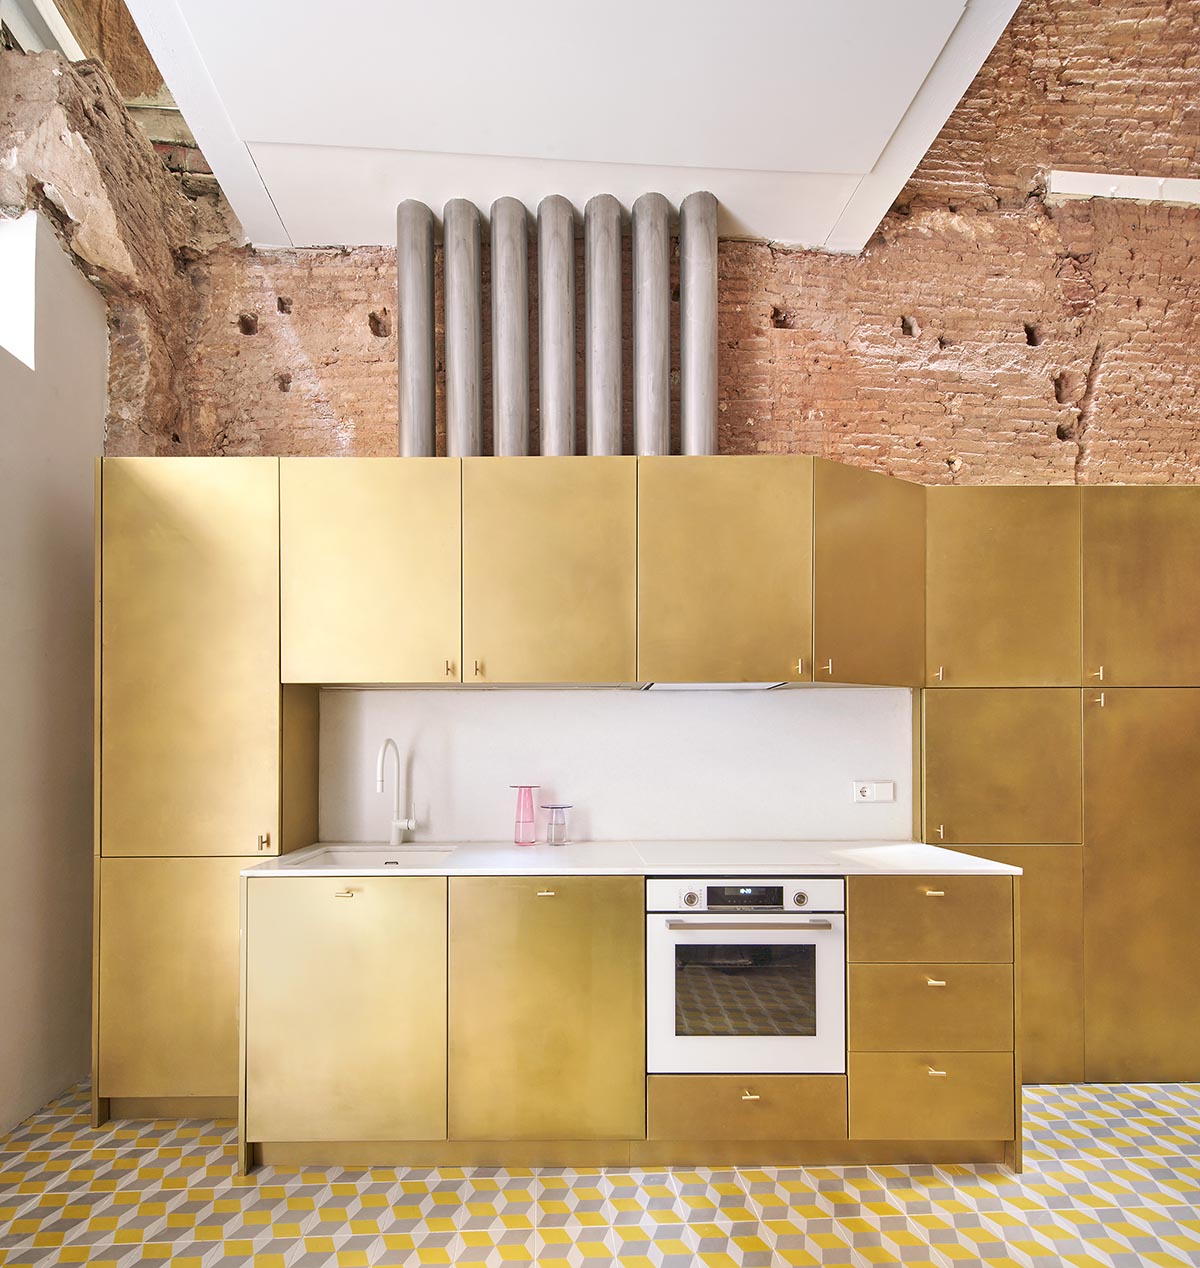 Рауль Санчес обновляет старую квартиру с золотыми тоннами и винтовой лестницей, чтобы создать необработанные интерьеры.